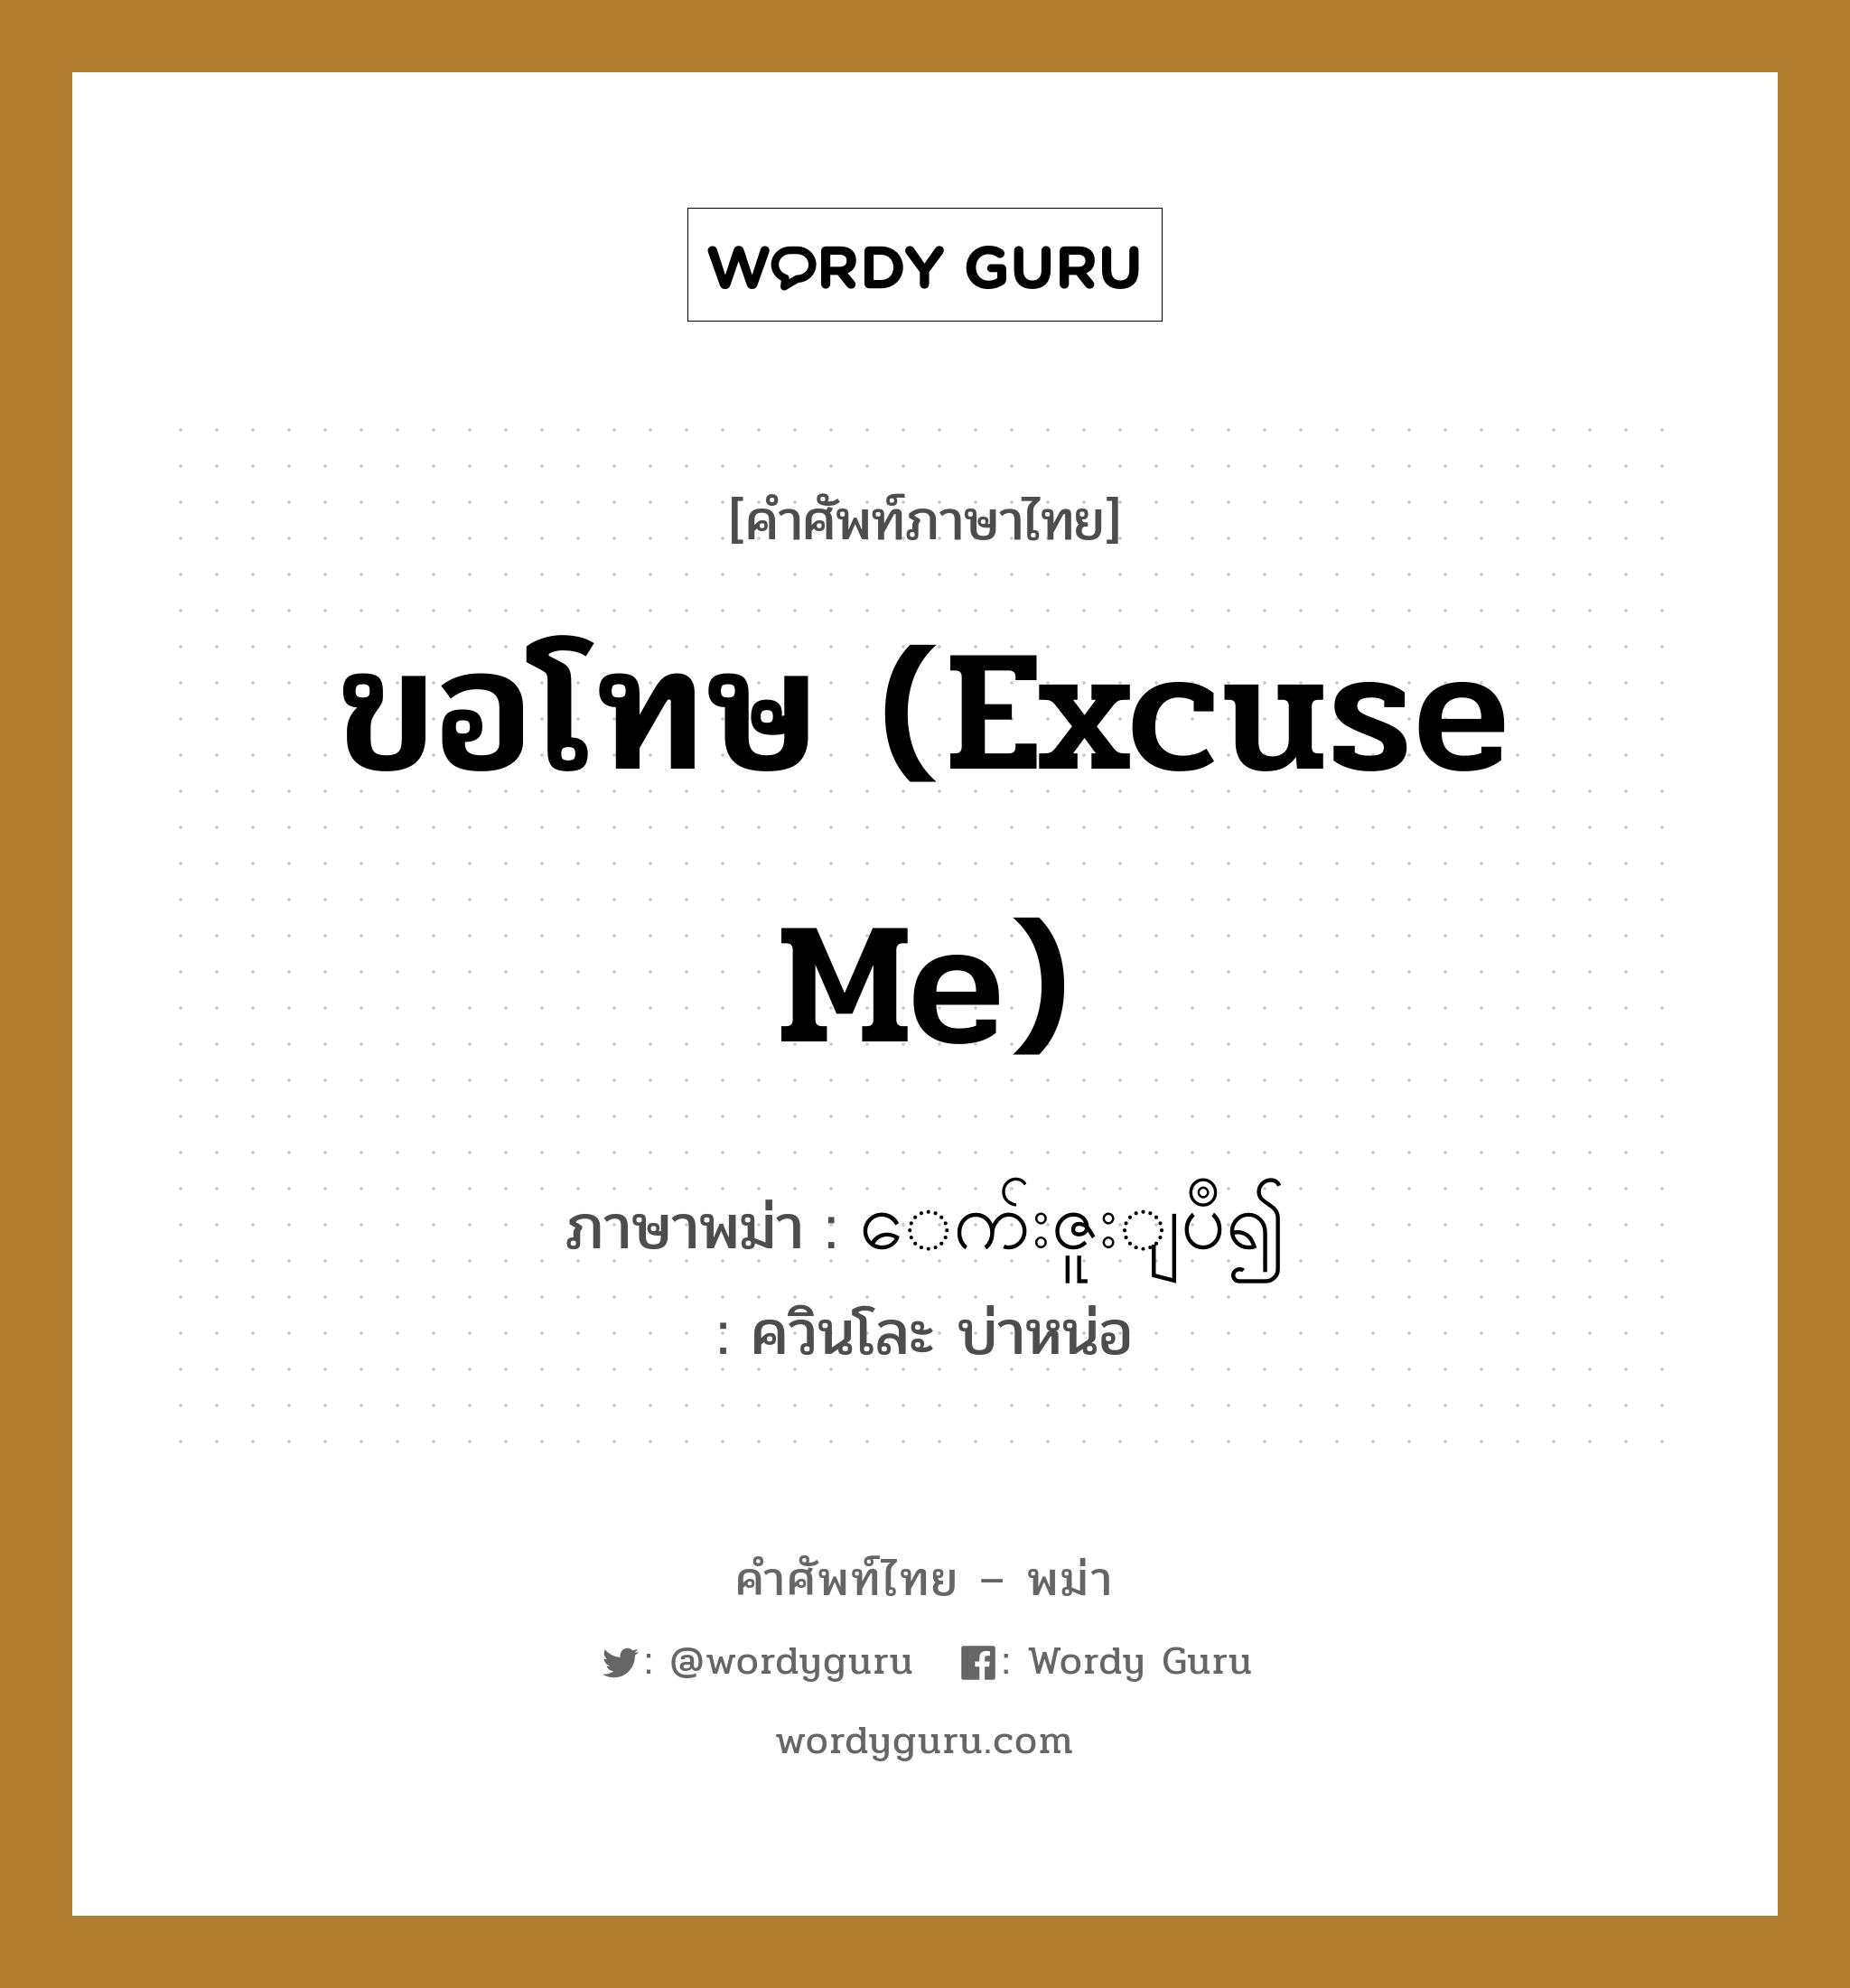 ขอโทษ (Excuse me) ภาษาพม่าคืออะไร, คำศัพท์ภาษาไทย - พม่า ขอโทษ (Excuse me) ภาษาพม่า ေက်းဇူးျပဳ၍ หมวด ทั่วไป ควินโละ บ่าหน่อ หมวด ทั่วไป